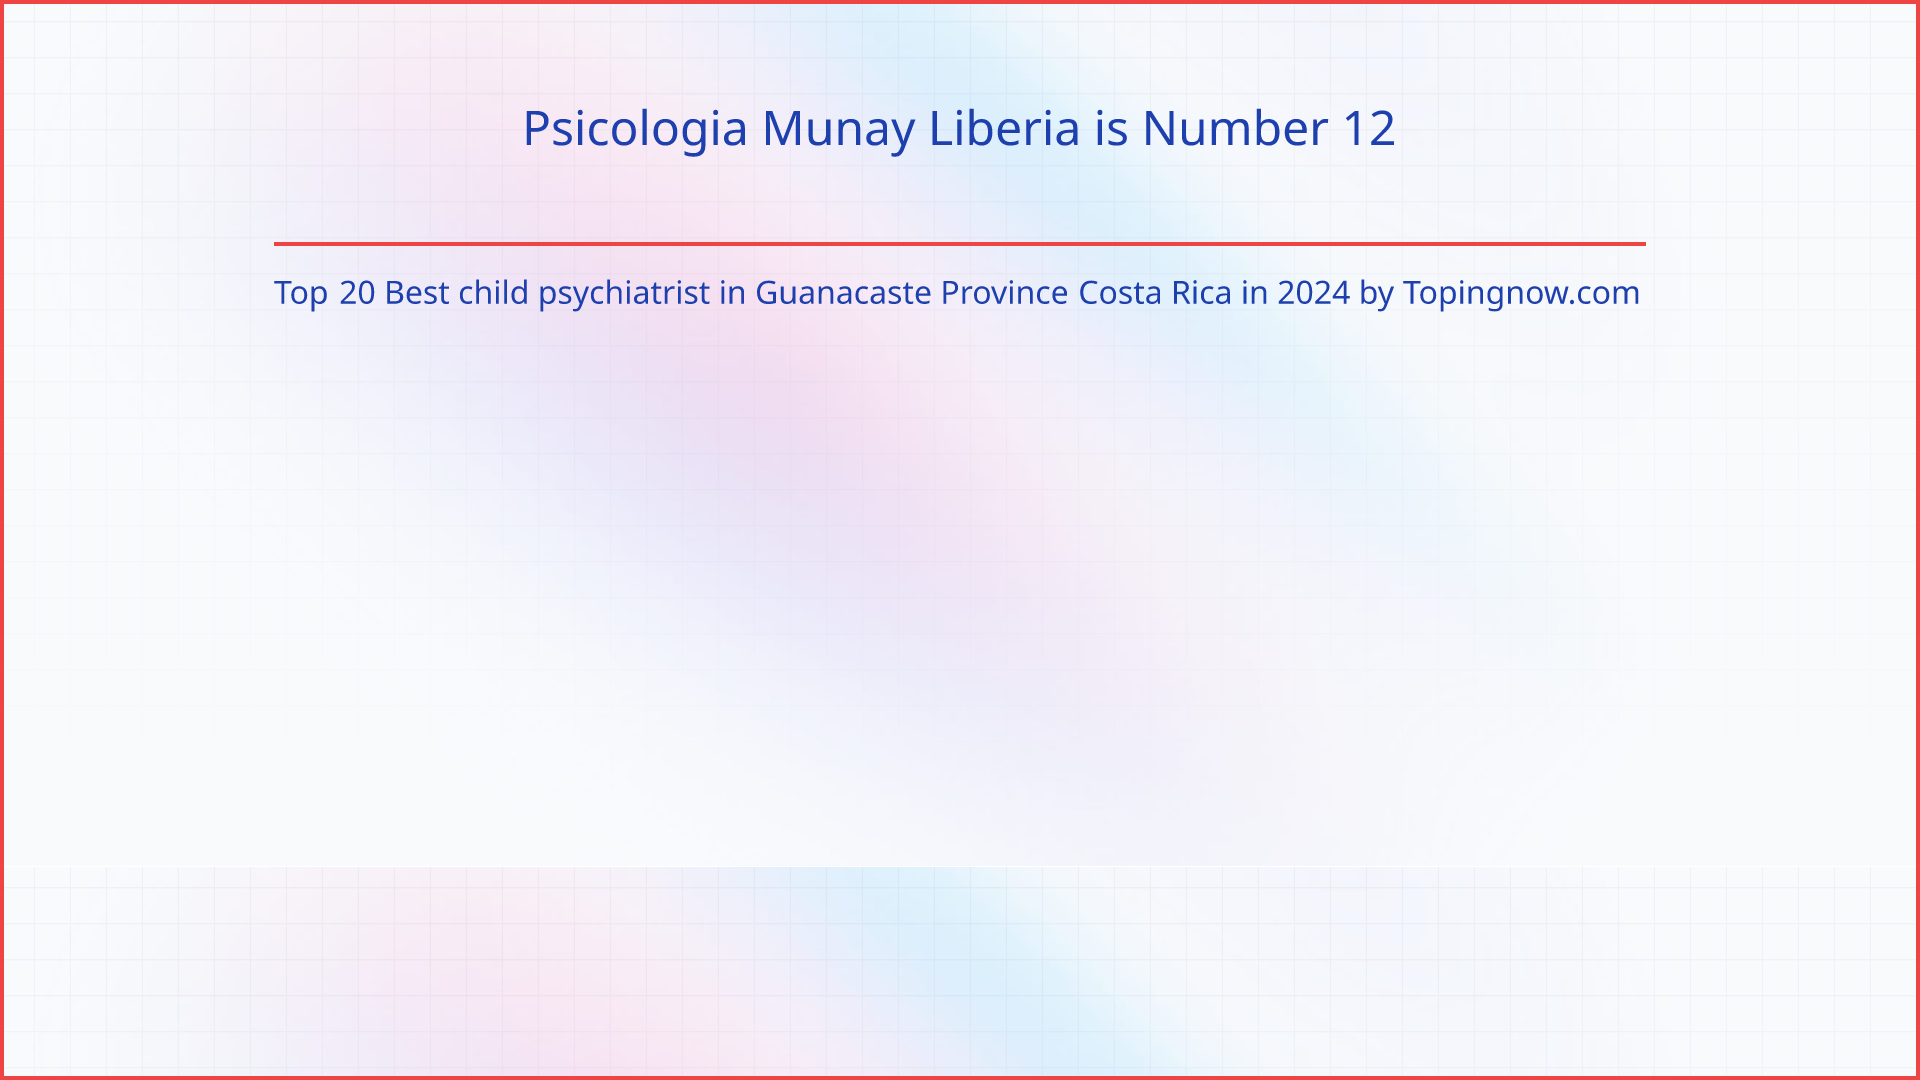 Psicologia Munay Liberia: Top 20 Best child psychiatrist in Guanacaste Province Costa Rica in 2024